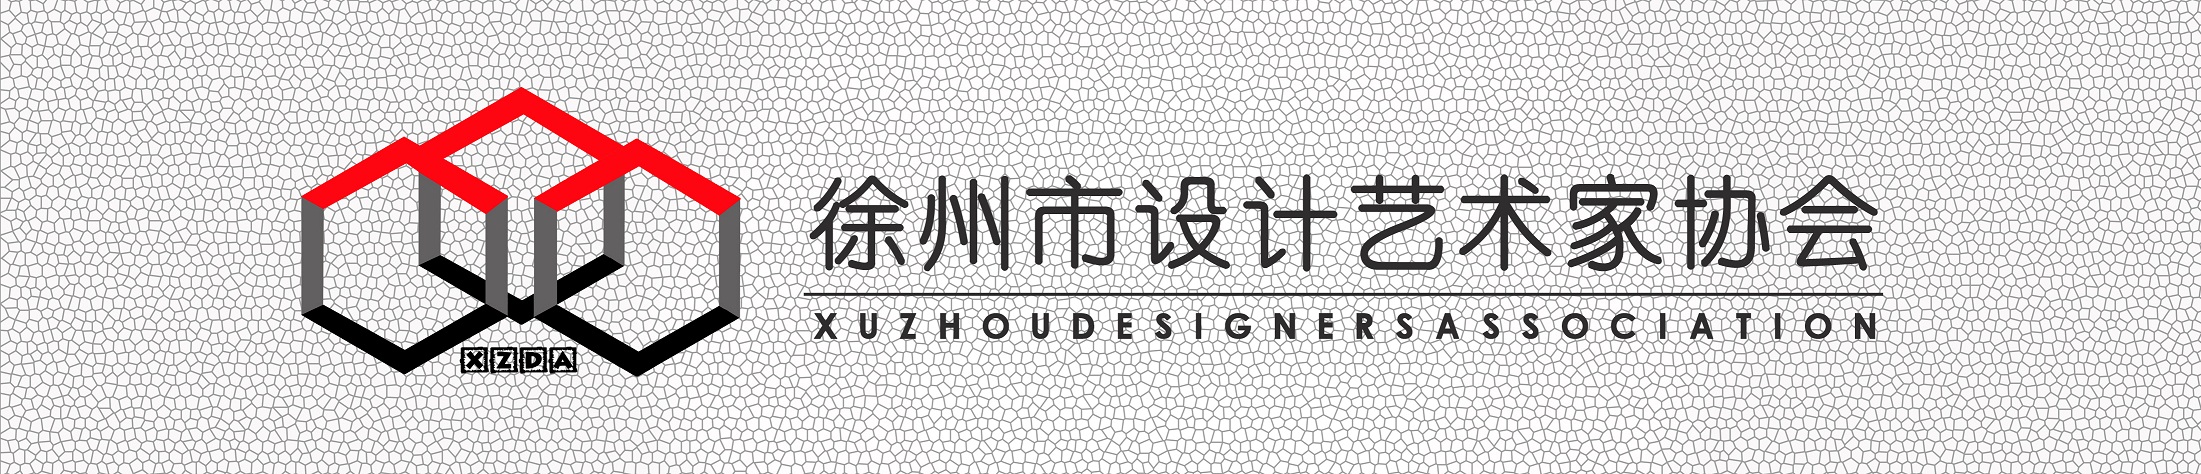 徐州市設計藝術家協會標誌